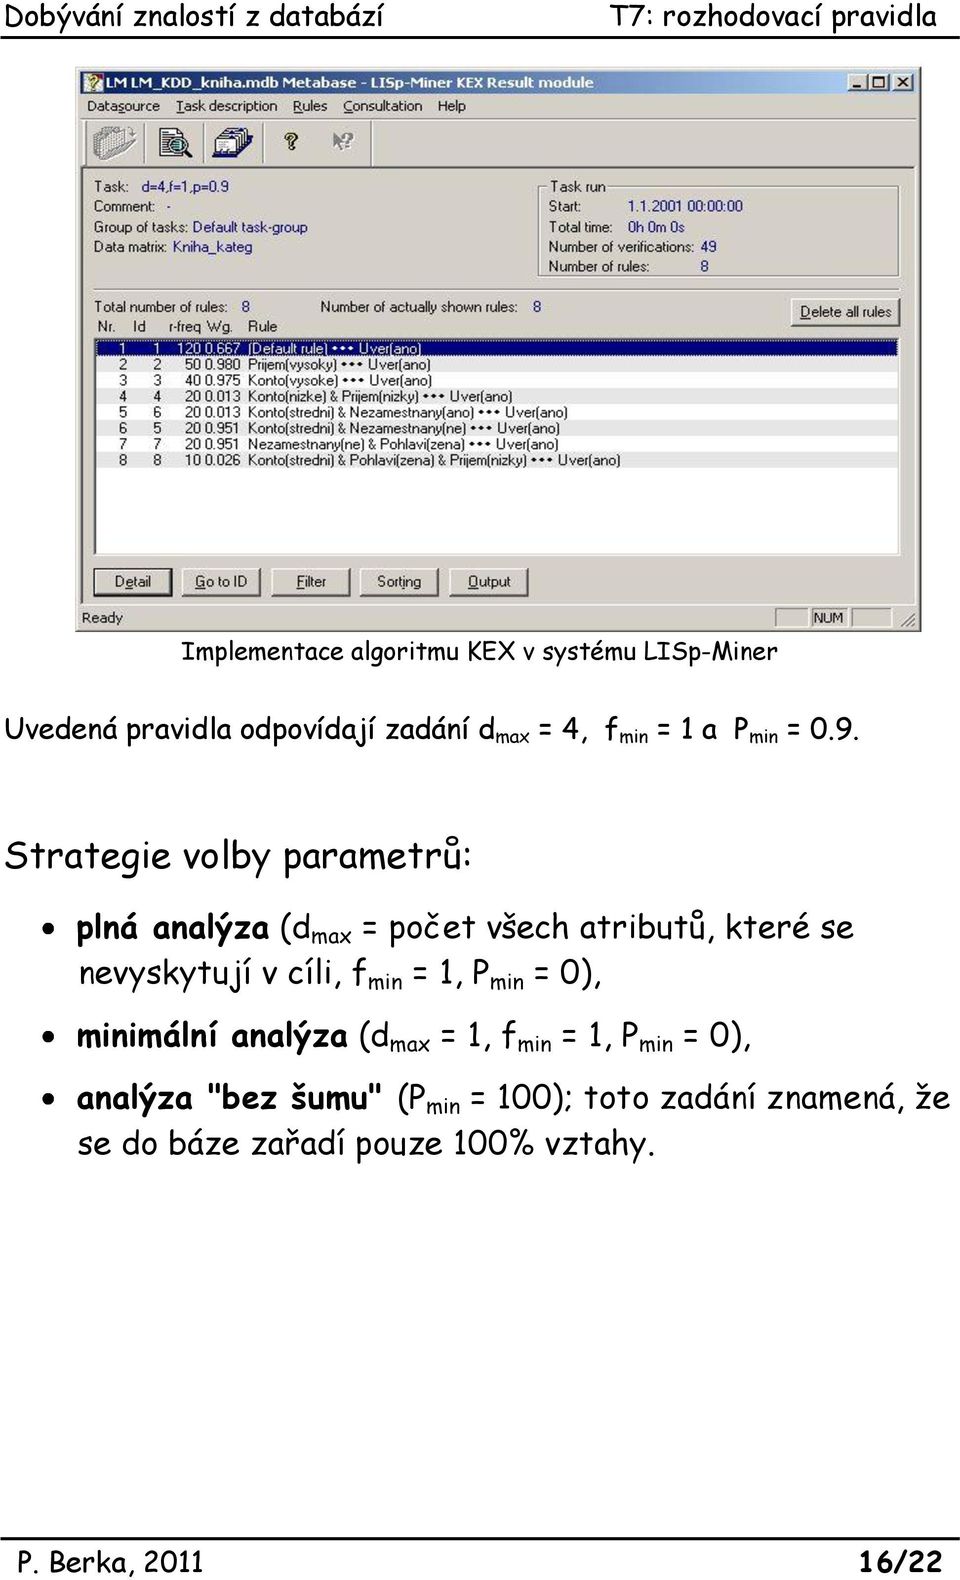 Strategie volby parametrů: plná analýza (d max = počet všech atributů, které se nevyskytují v cíli, f